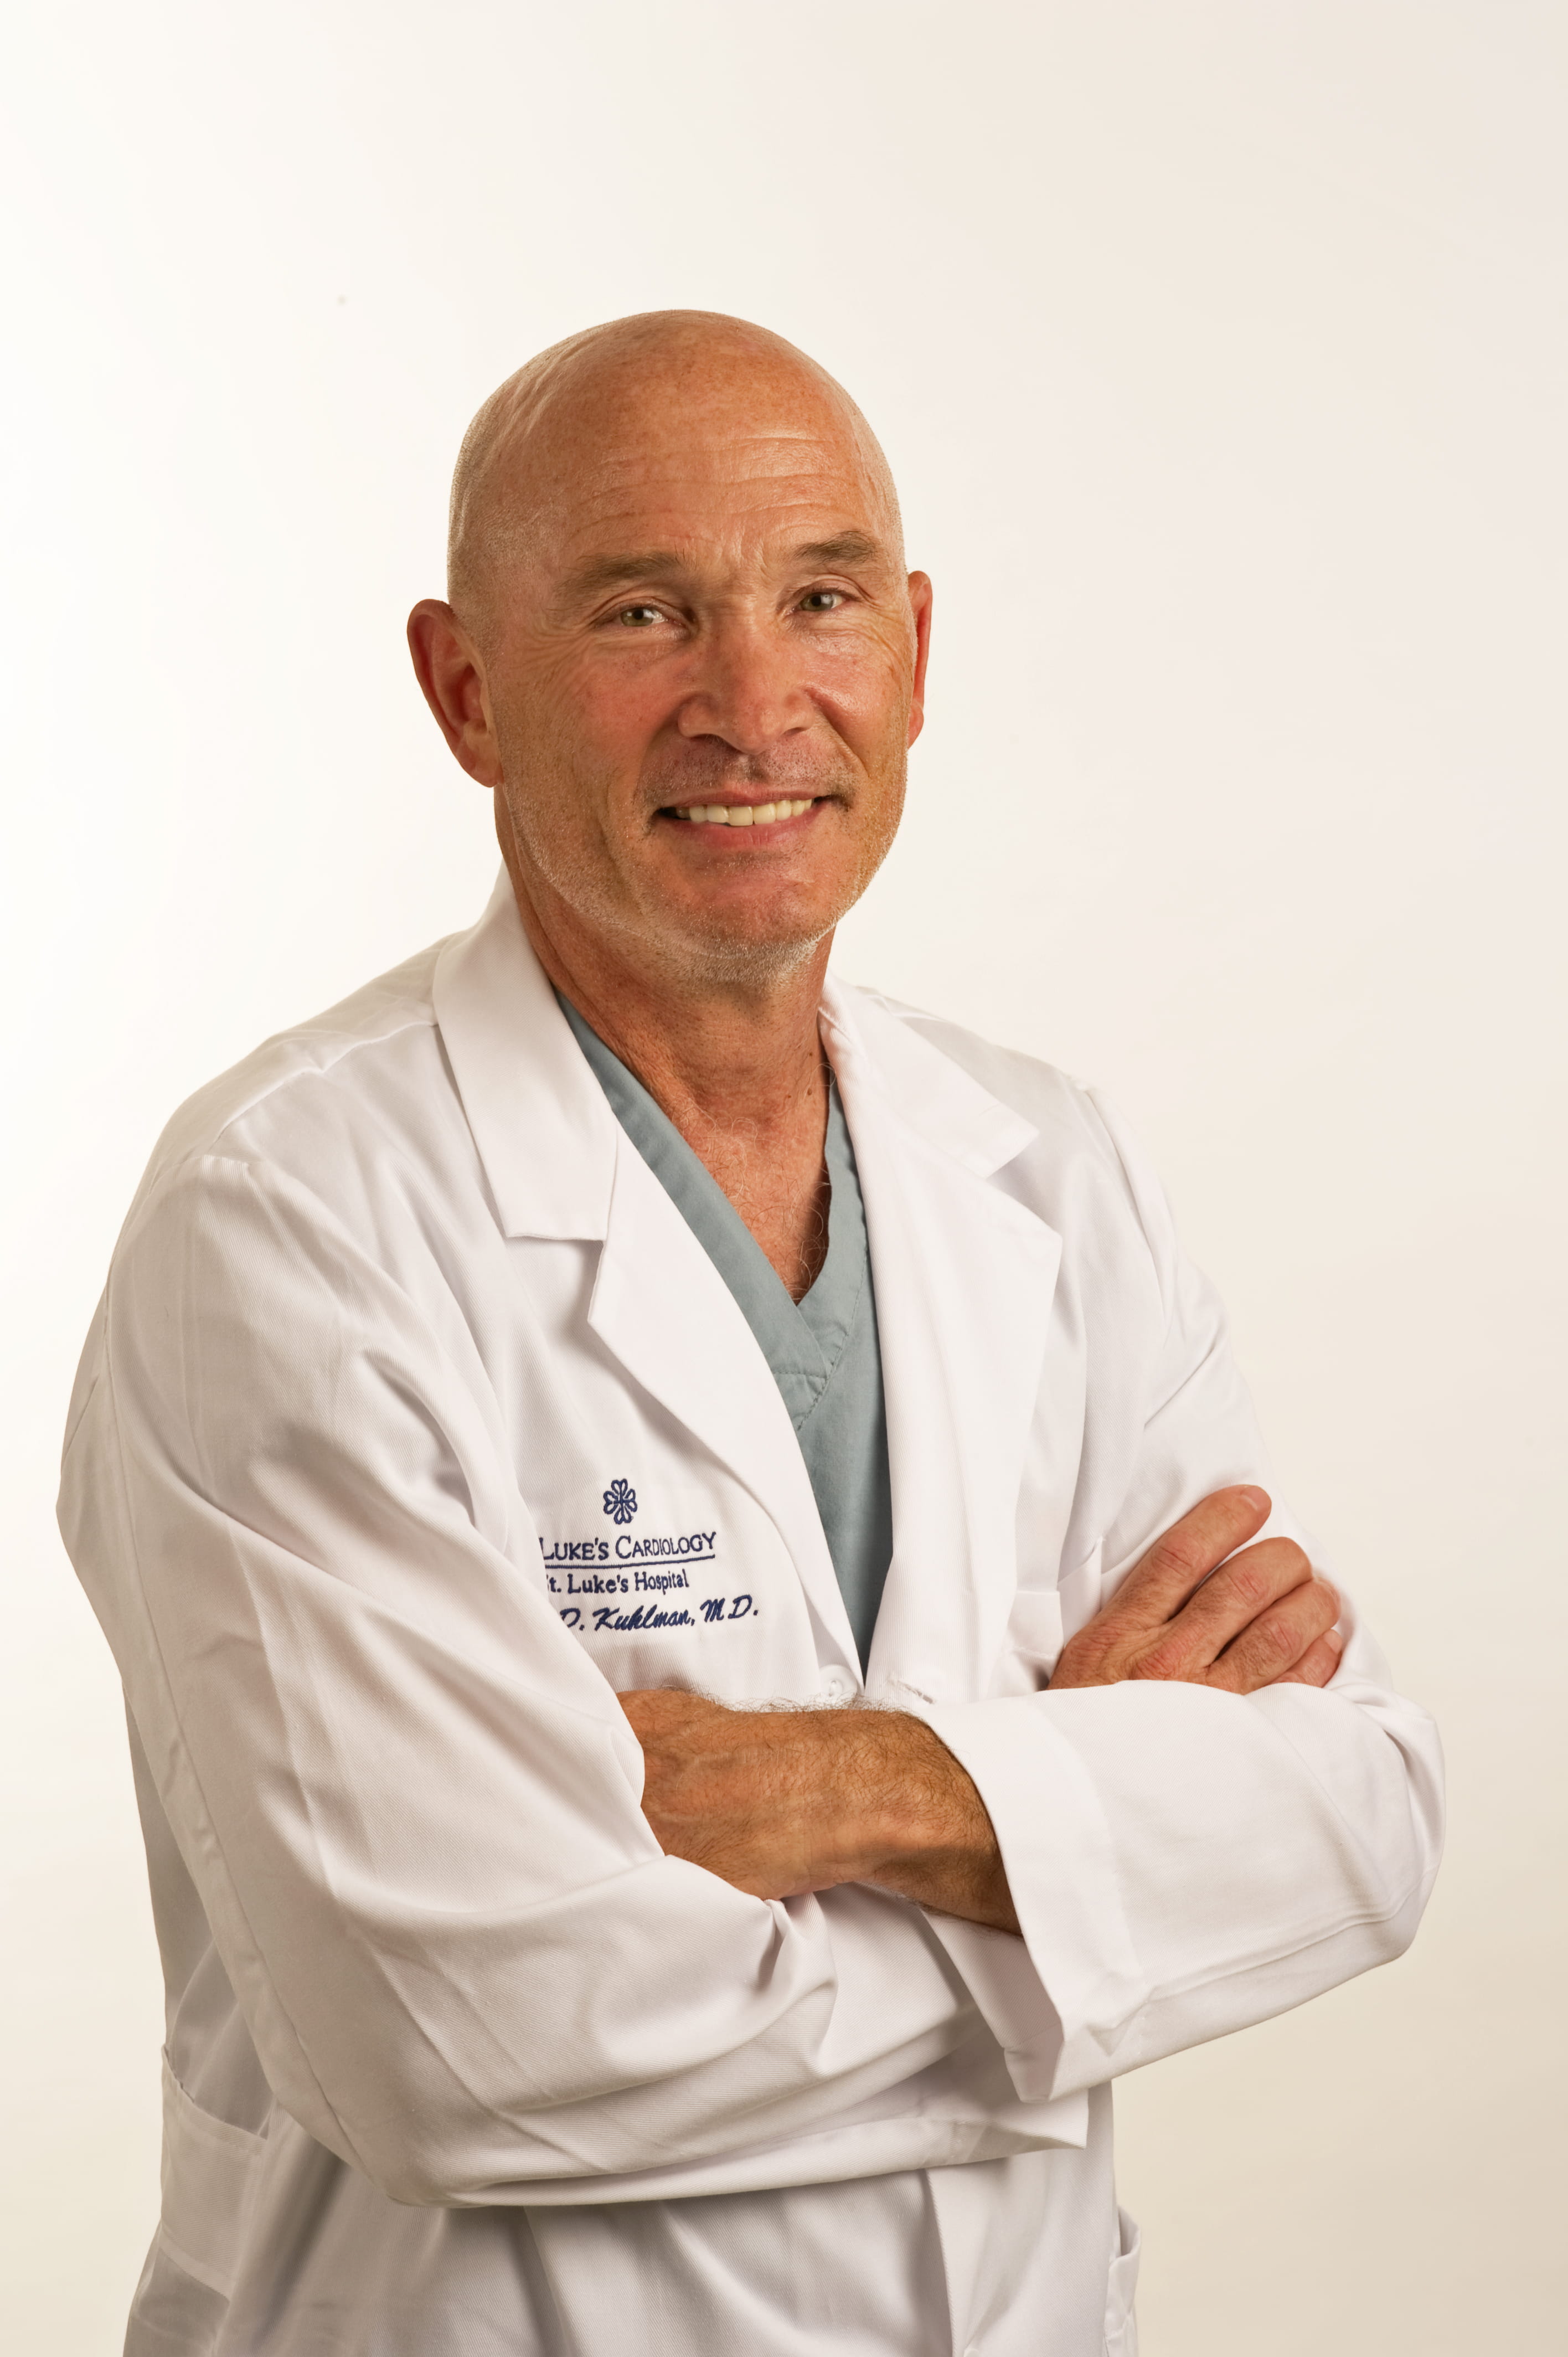 Peter D. Kuhlman, MD